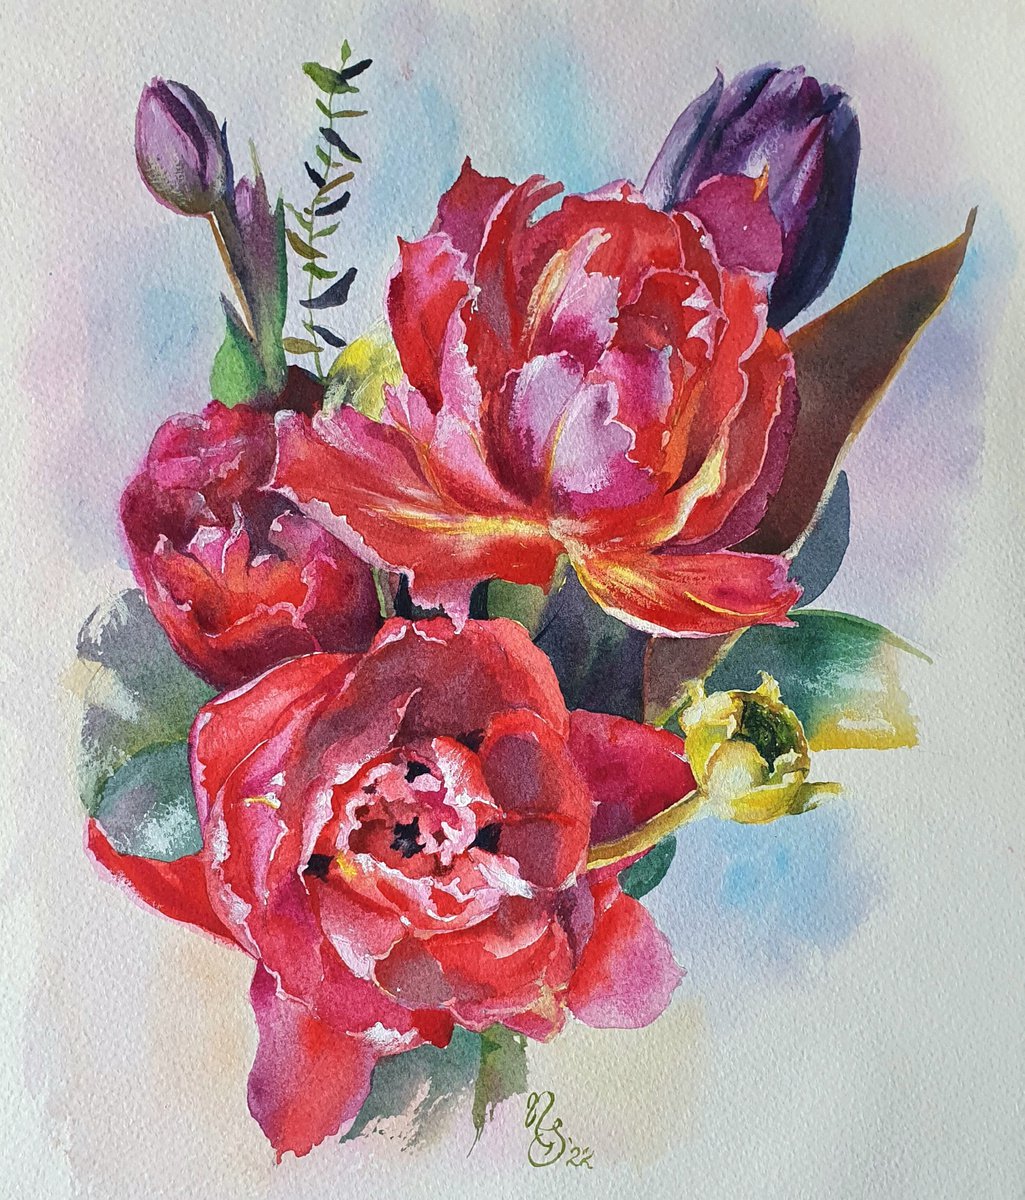 Carmine tulips - watercolor painting, framed and ready to hang. by Natasha Sokolnikova